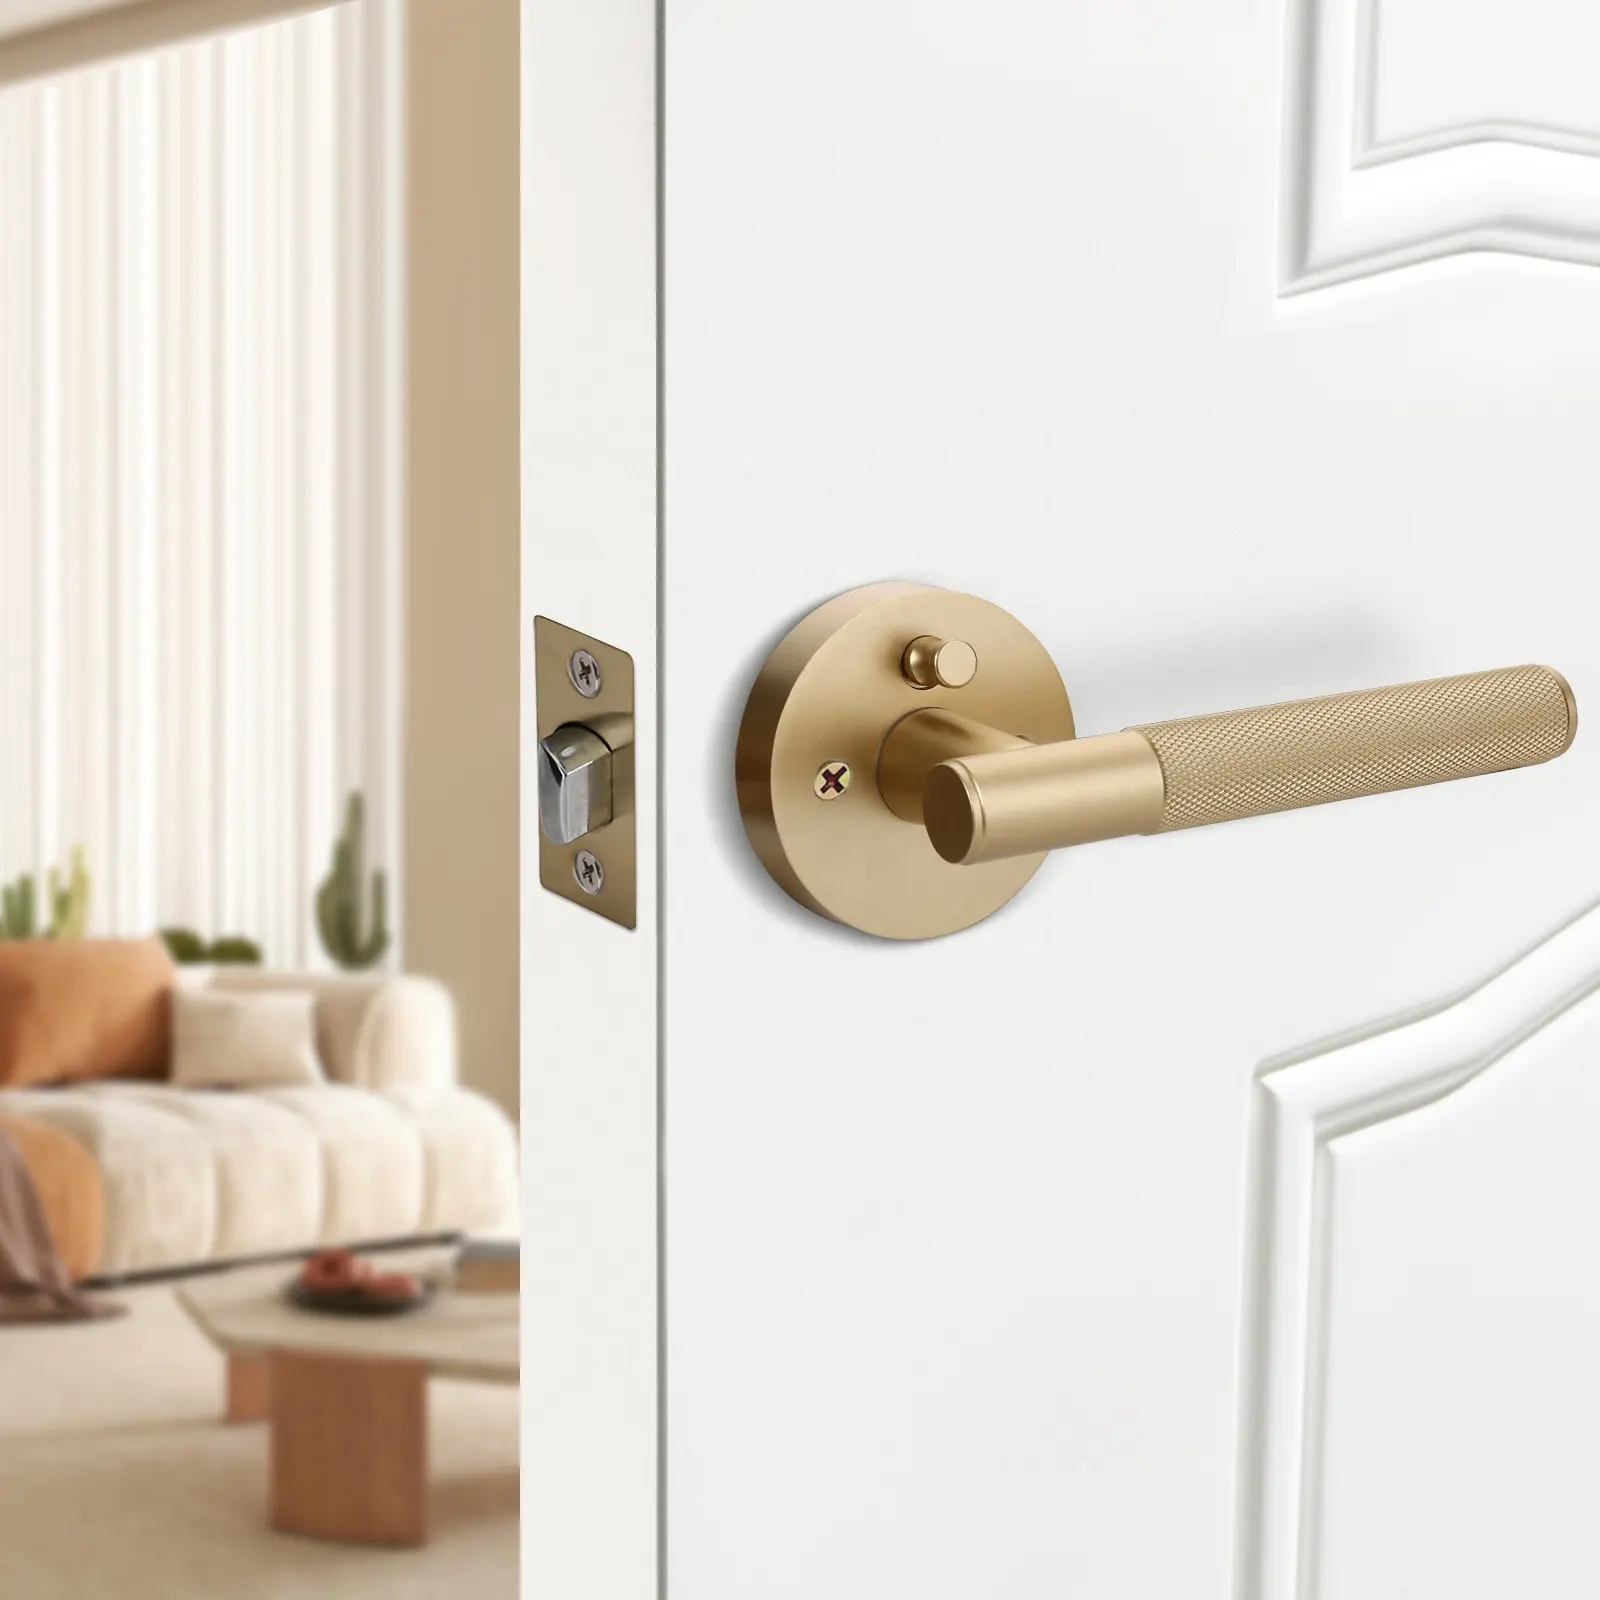 Pegangan pintu Interior, dicat Amerika matte emas dengan kunci privasi untuk Interior rumah mewah